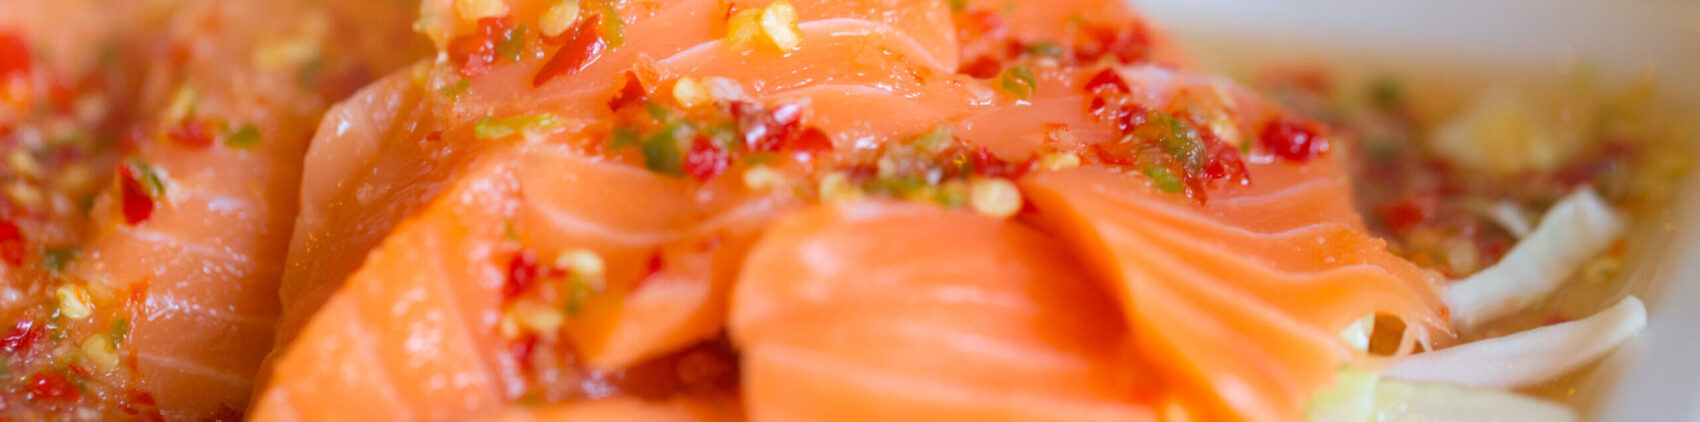 Marinade de saumon aux agrumes et fenouil